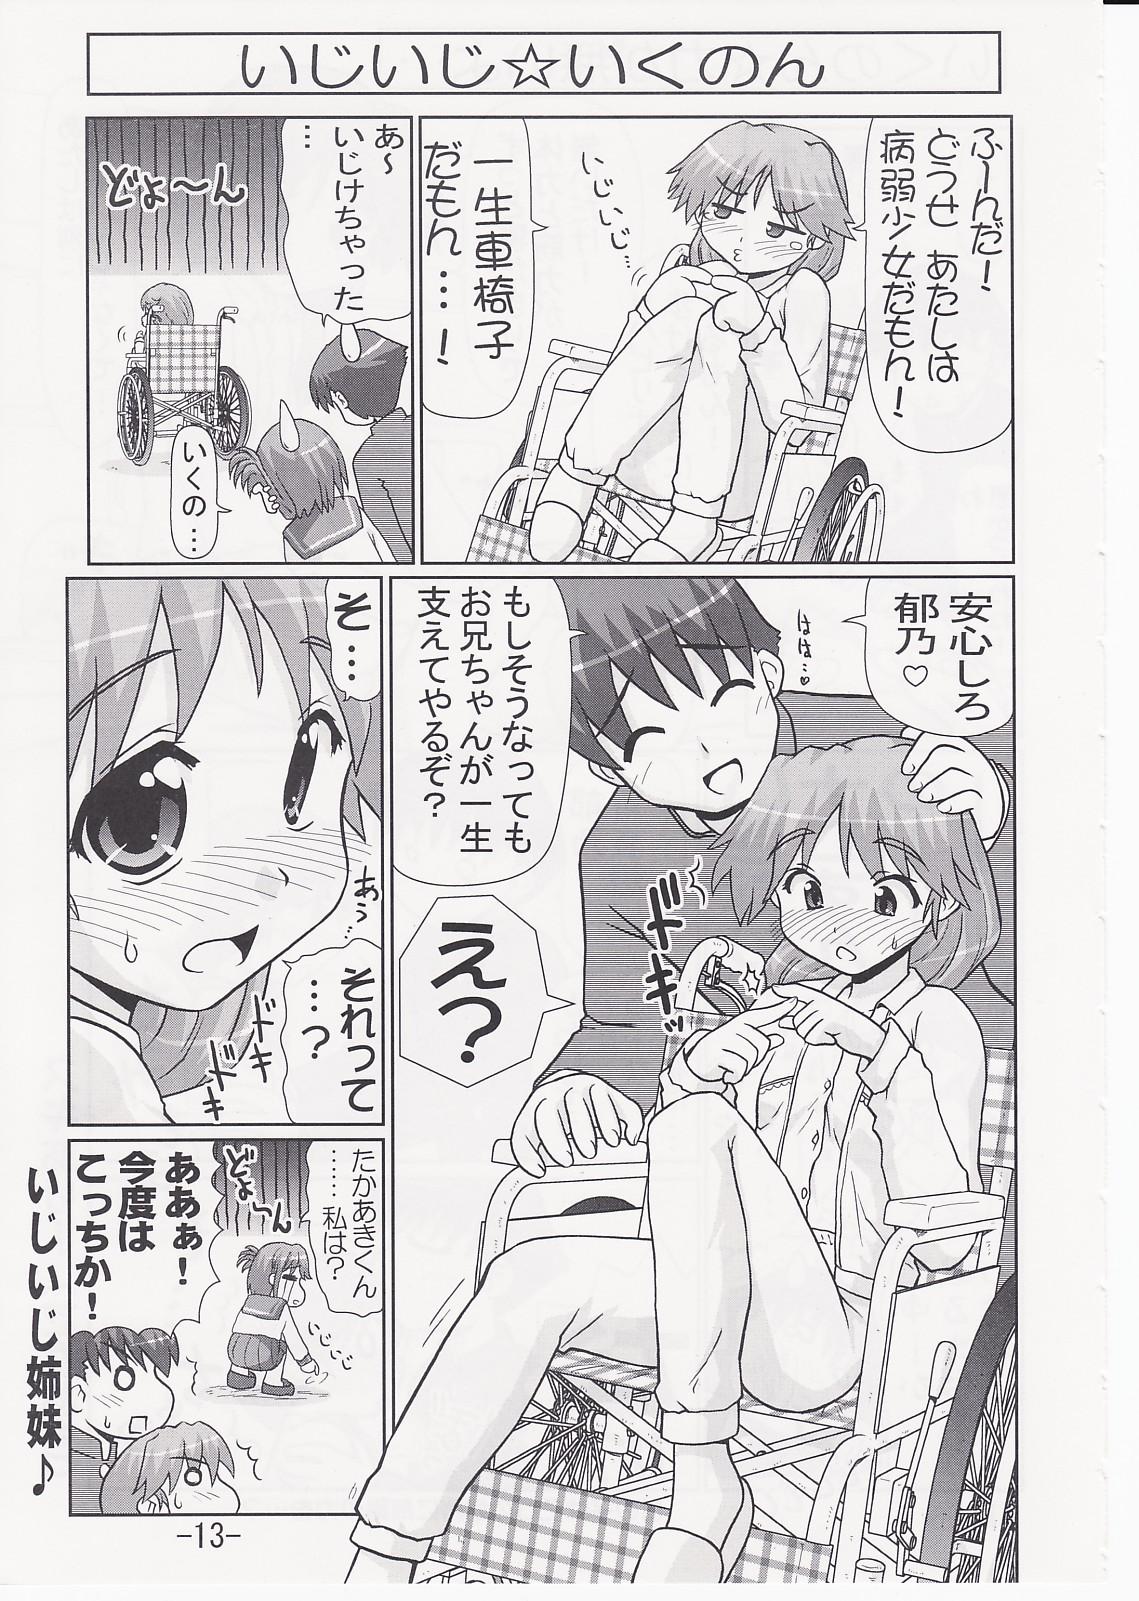 Russian Ikunon Manga 2 - Toheart2 Gay Cut - Page 12